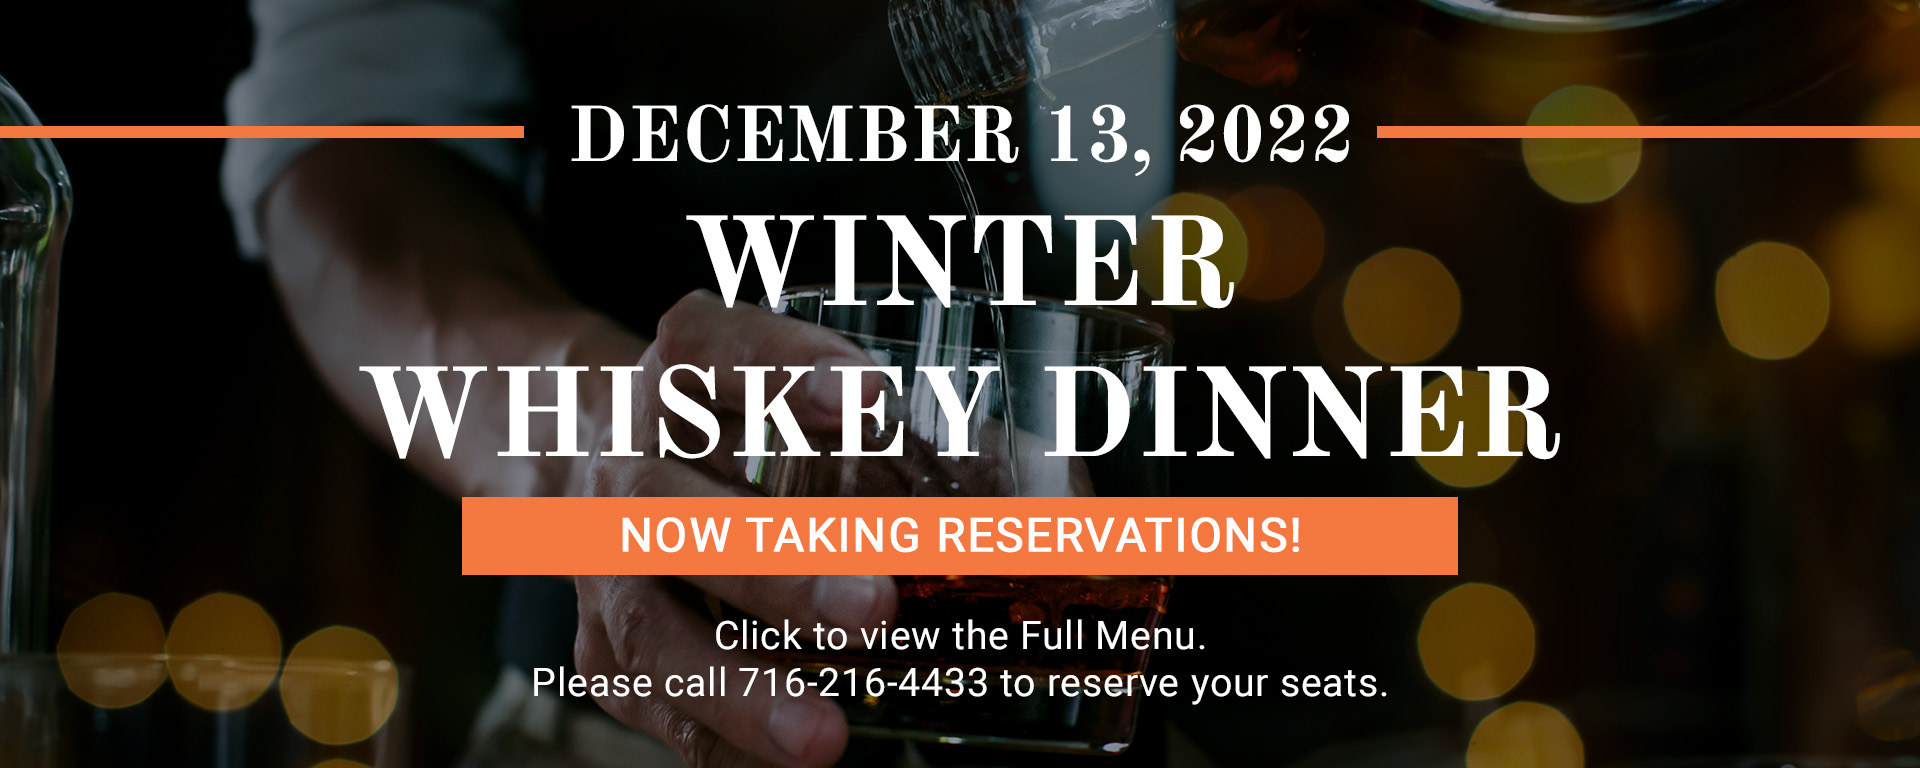 12/13/22 Winter Whiskey Dinner